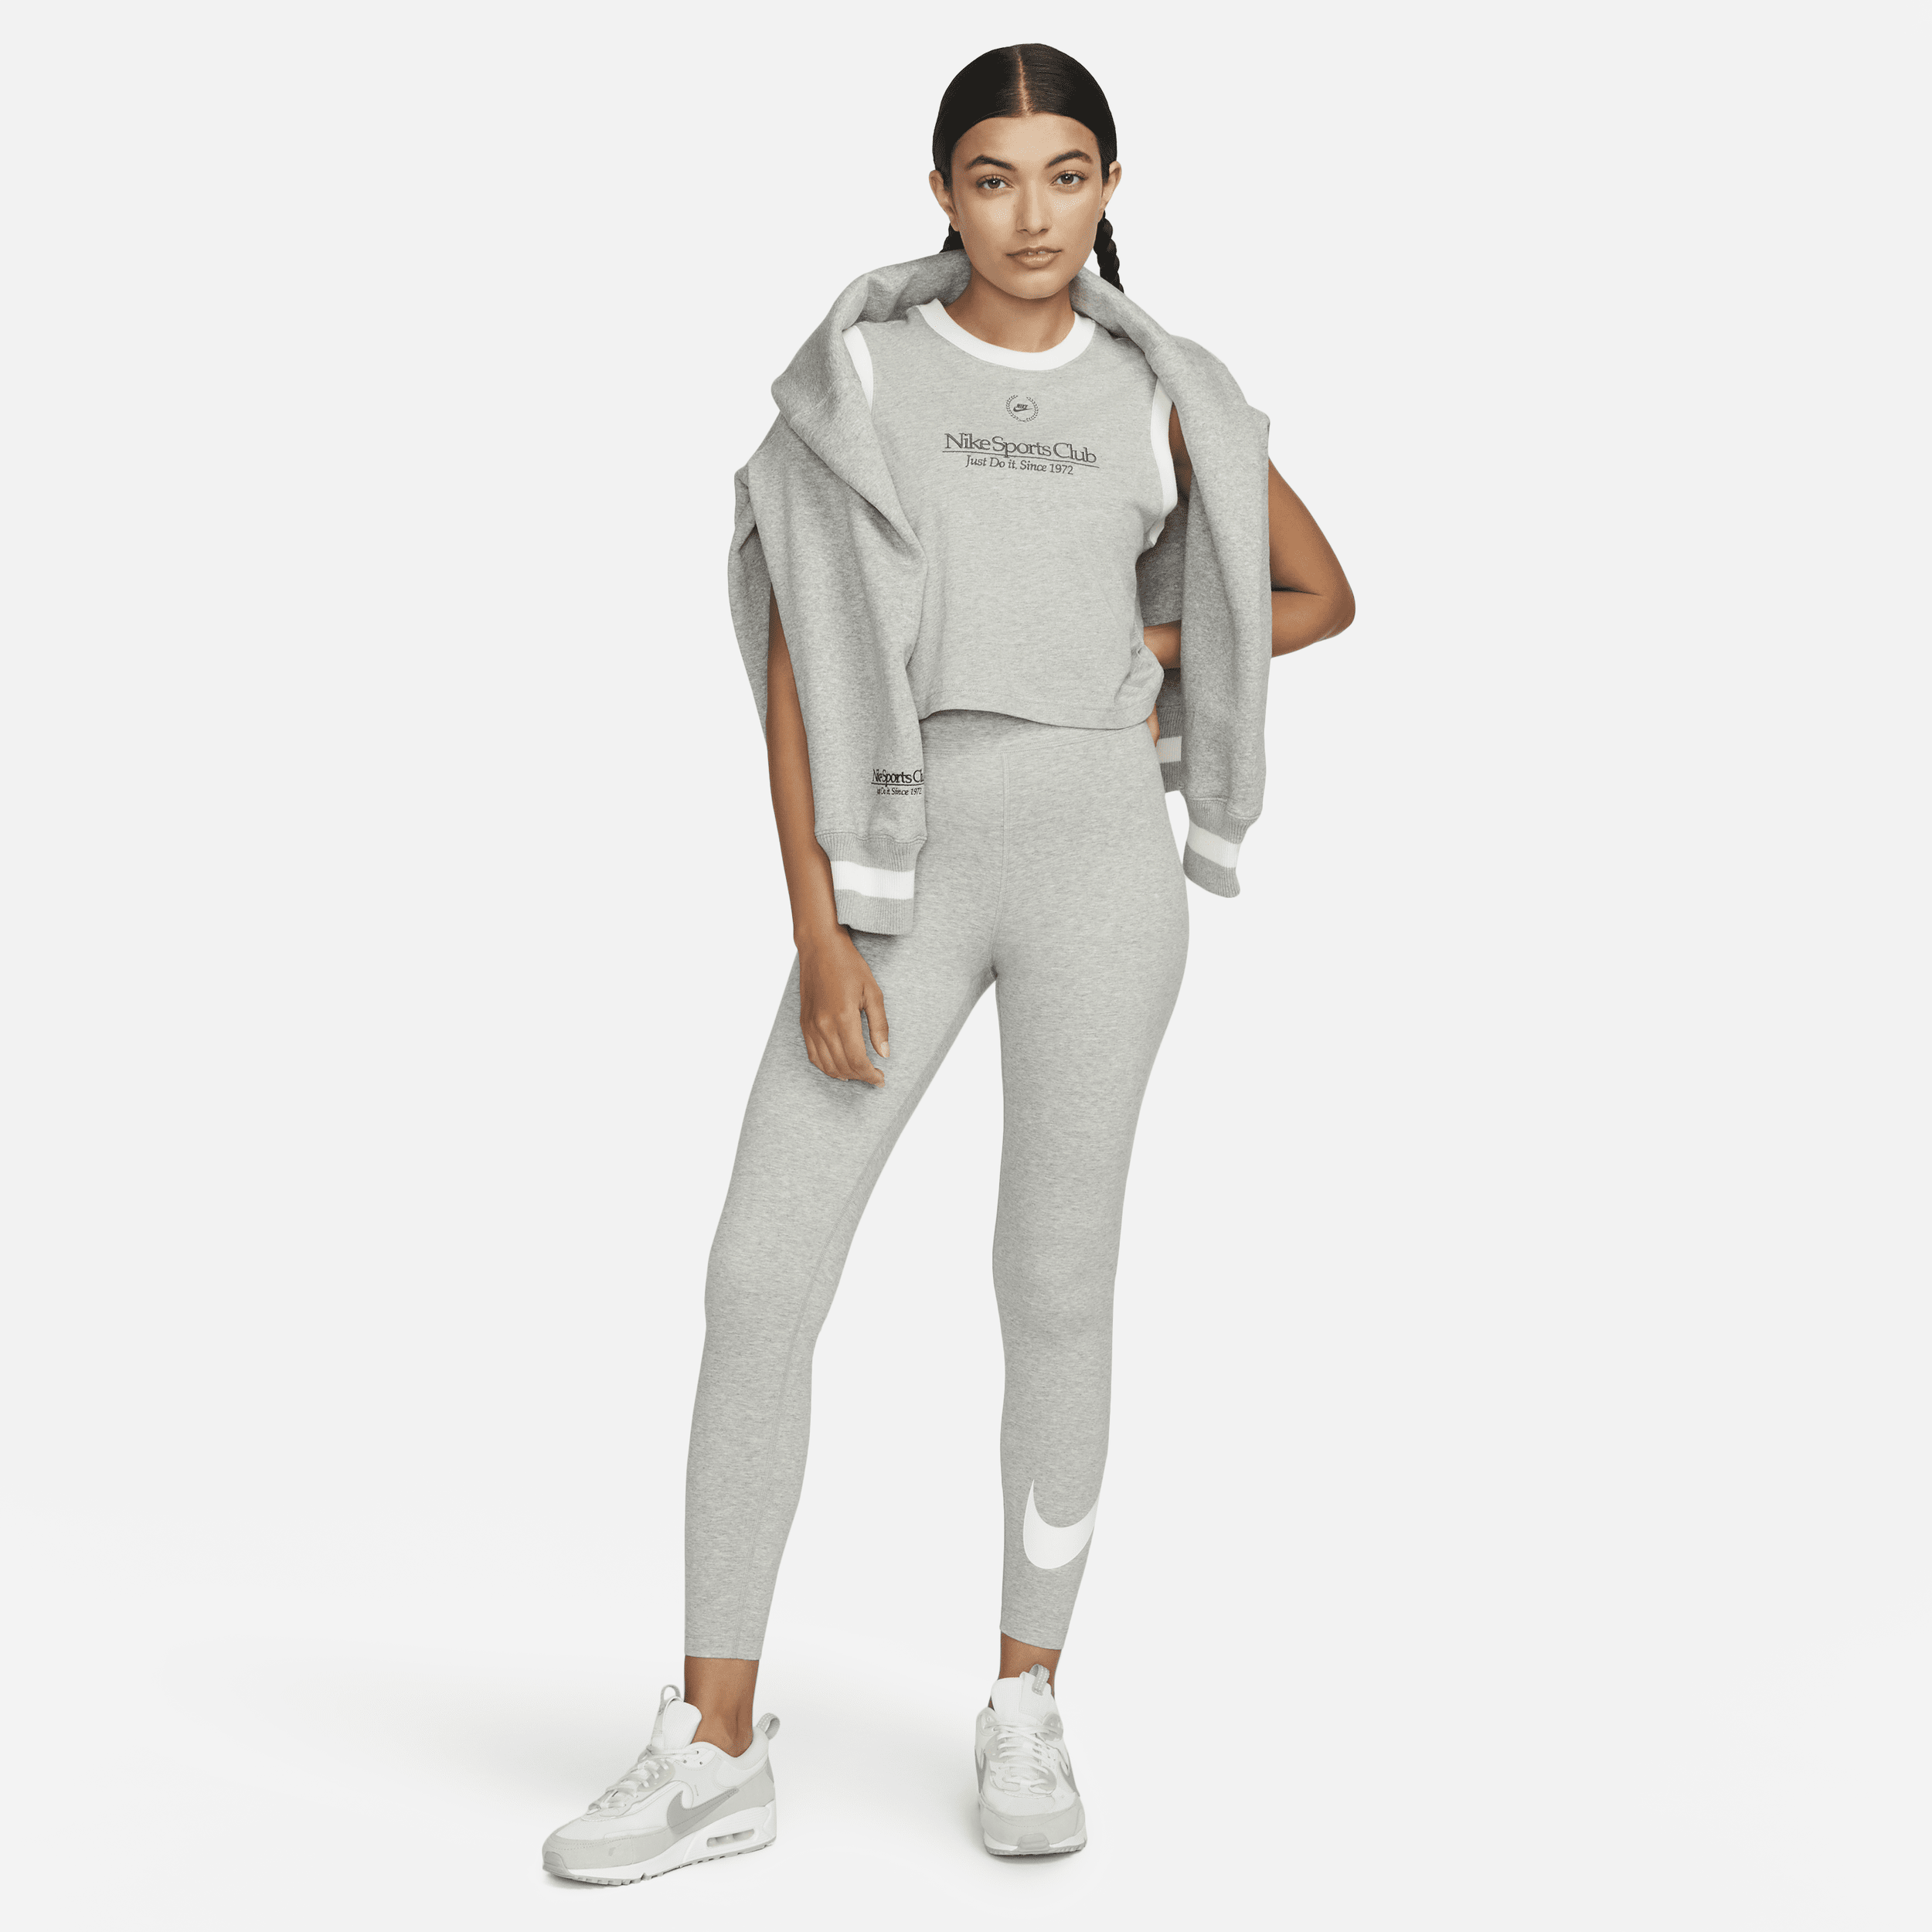 Nike Sportswear Classics legging met hoge taille en graphic voor dames Grijs